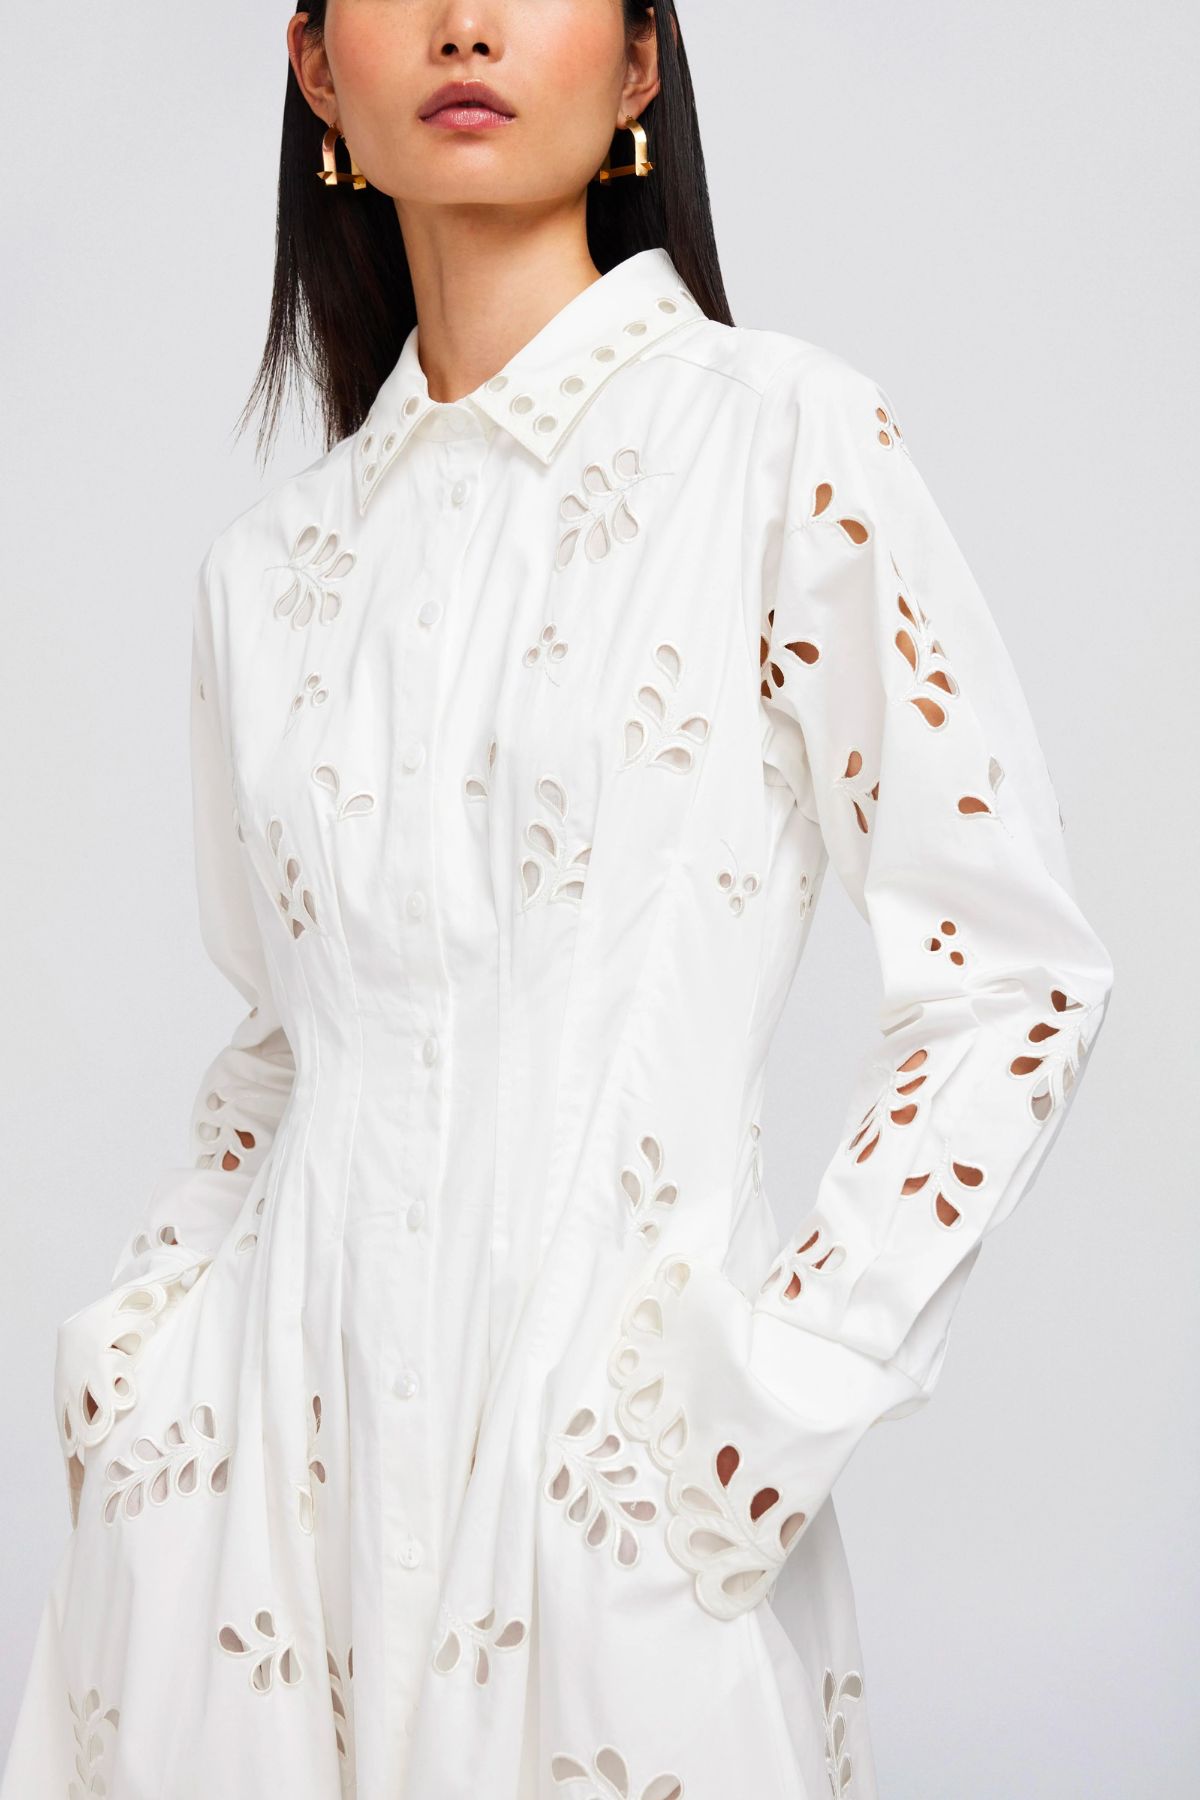 Simkhai Eda Broderie Cotton Midi Dress - White